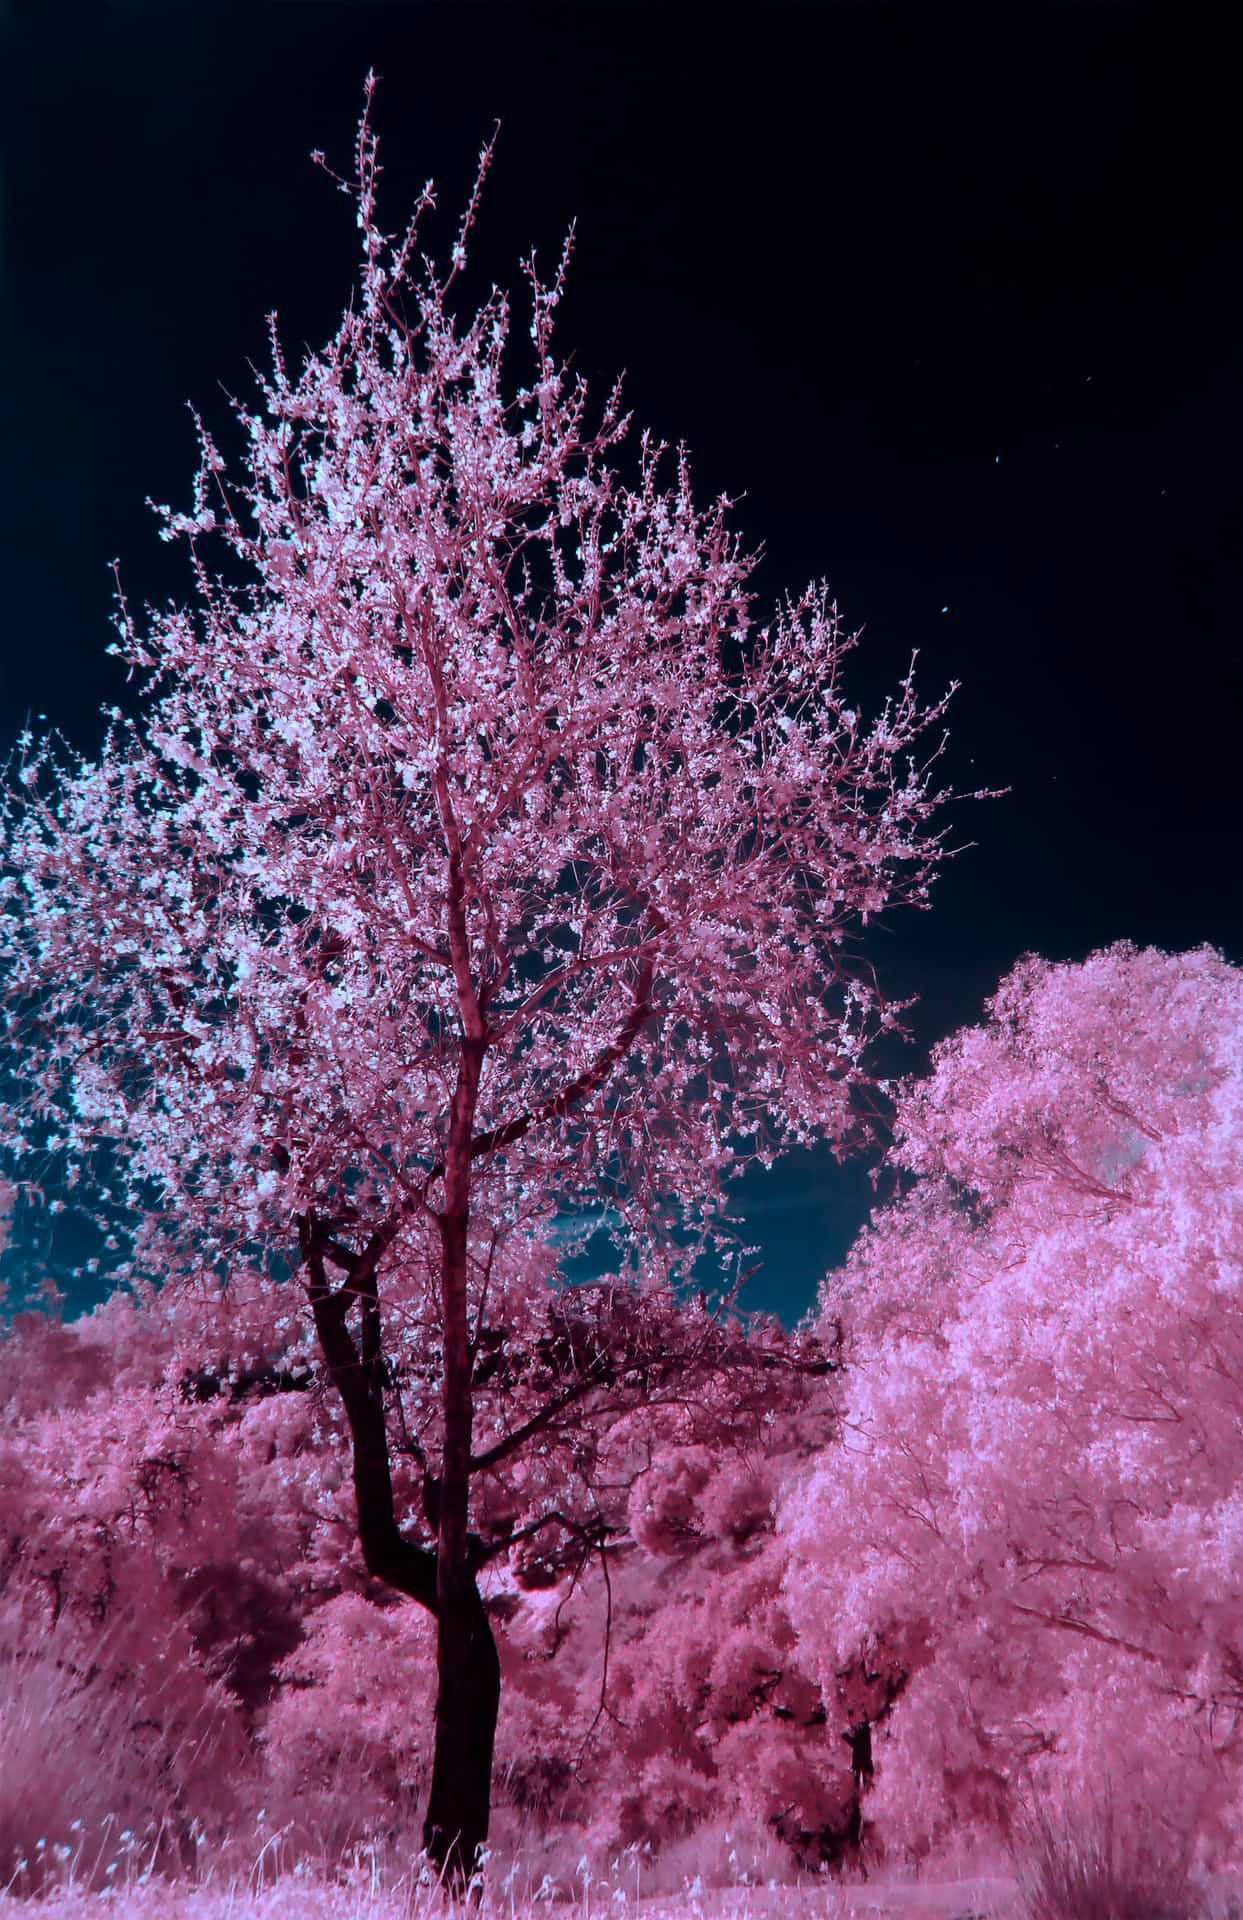 Under det glødende måneskin, blomstre kirsebærtræerne i harmoni. Wallpaper